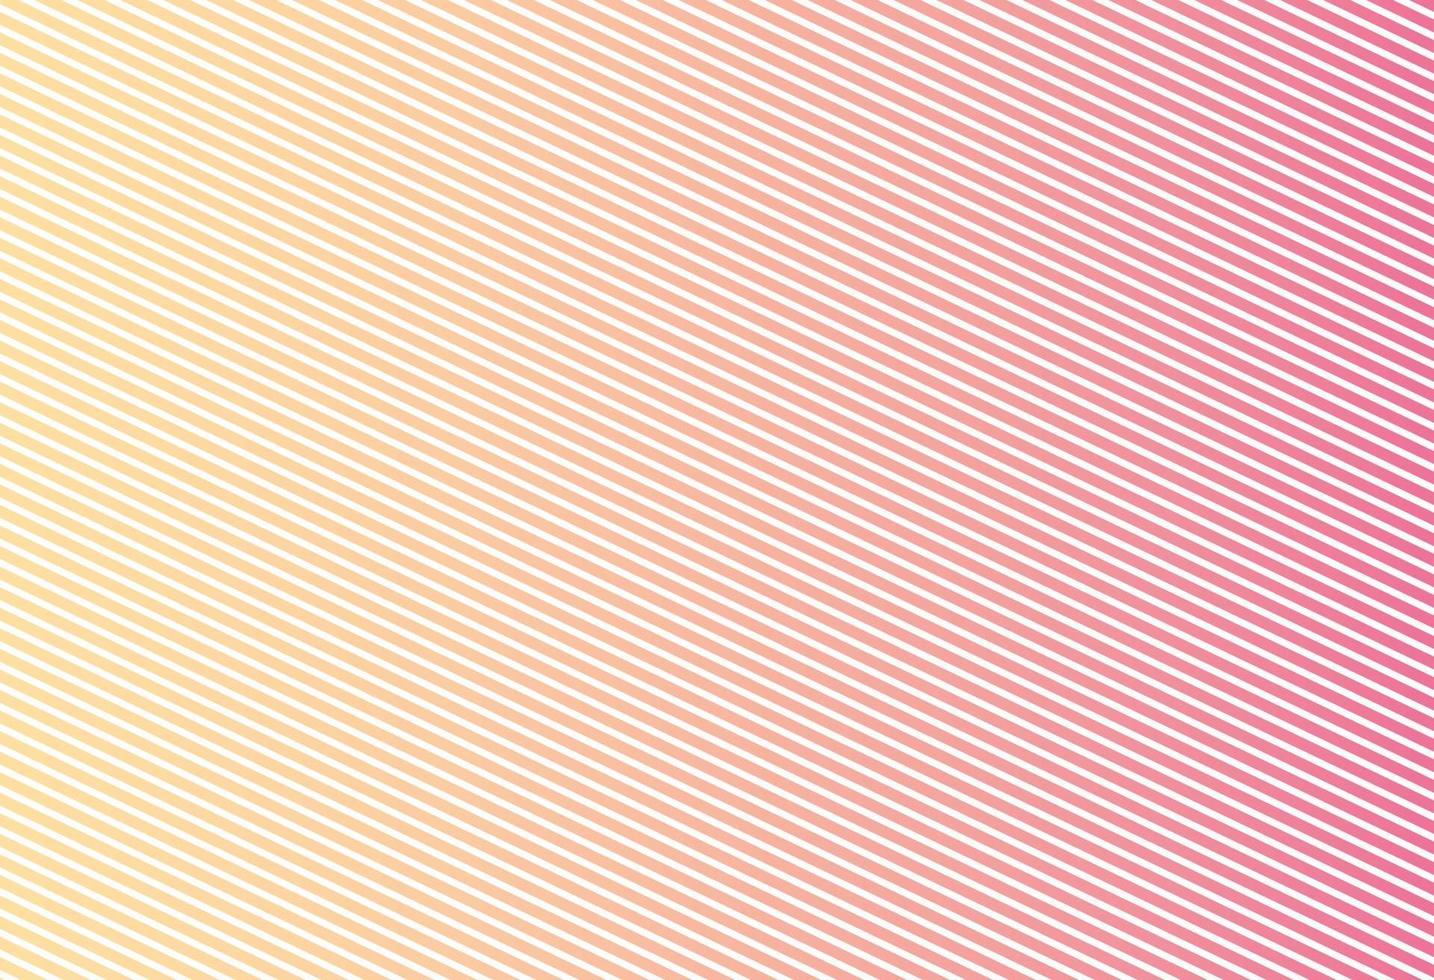 abstrakter Hintergrund, Vektorschablone für Ihre Ideen, monochromatische Linienbeschaffenheit - einfache Beschaffenheit für Ihr Design. moderne Dekoration für Websites, Poster, Banner, eps10 vecto vektor